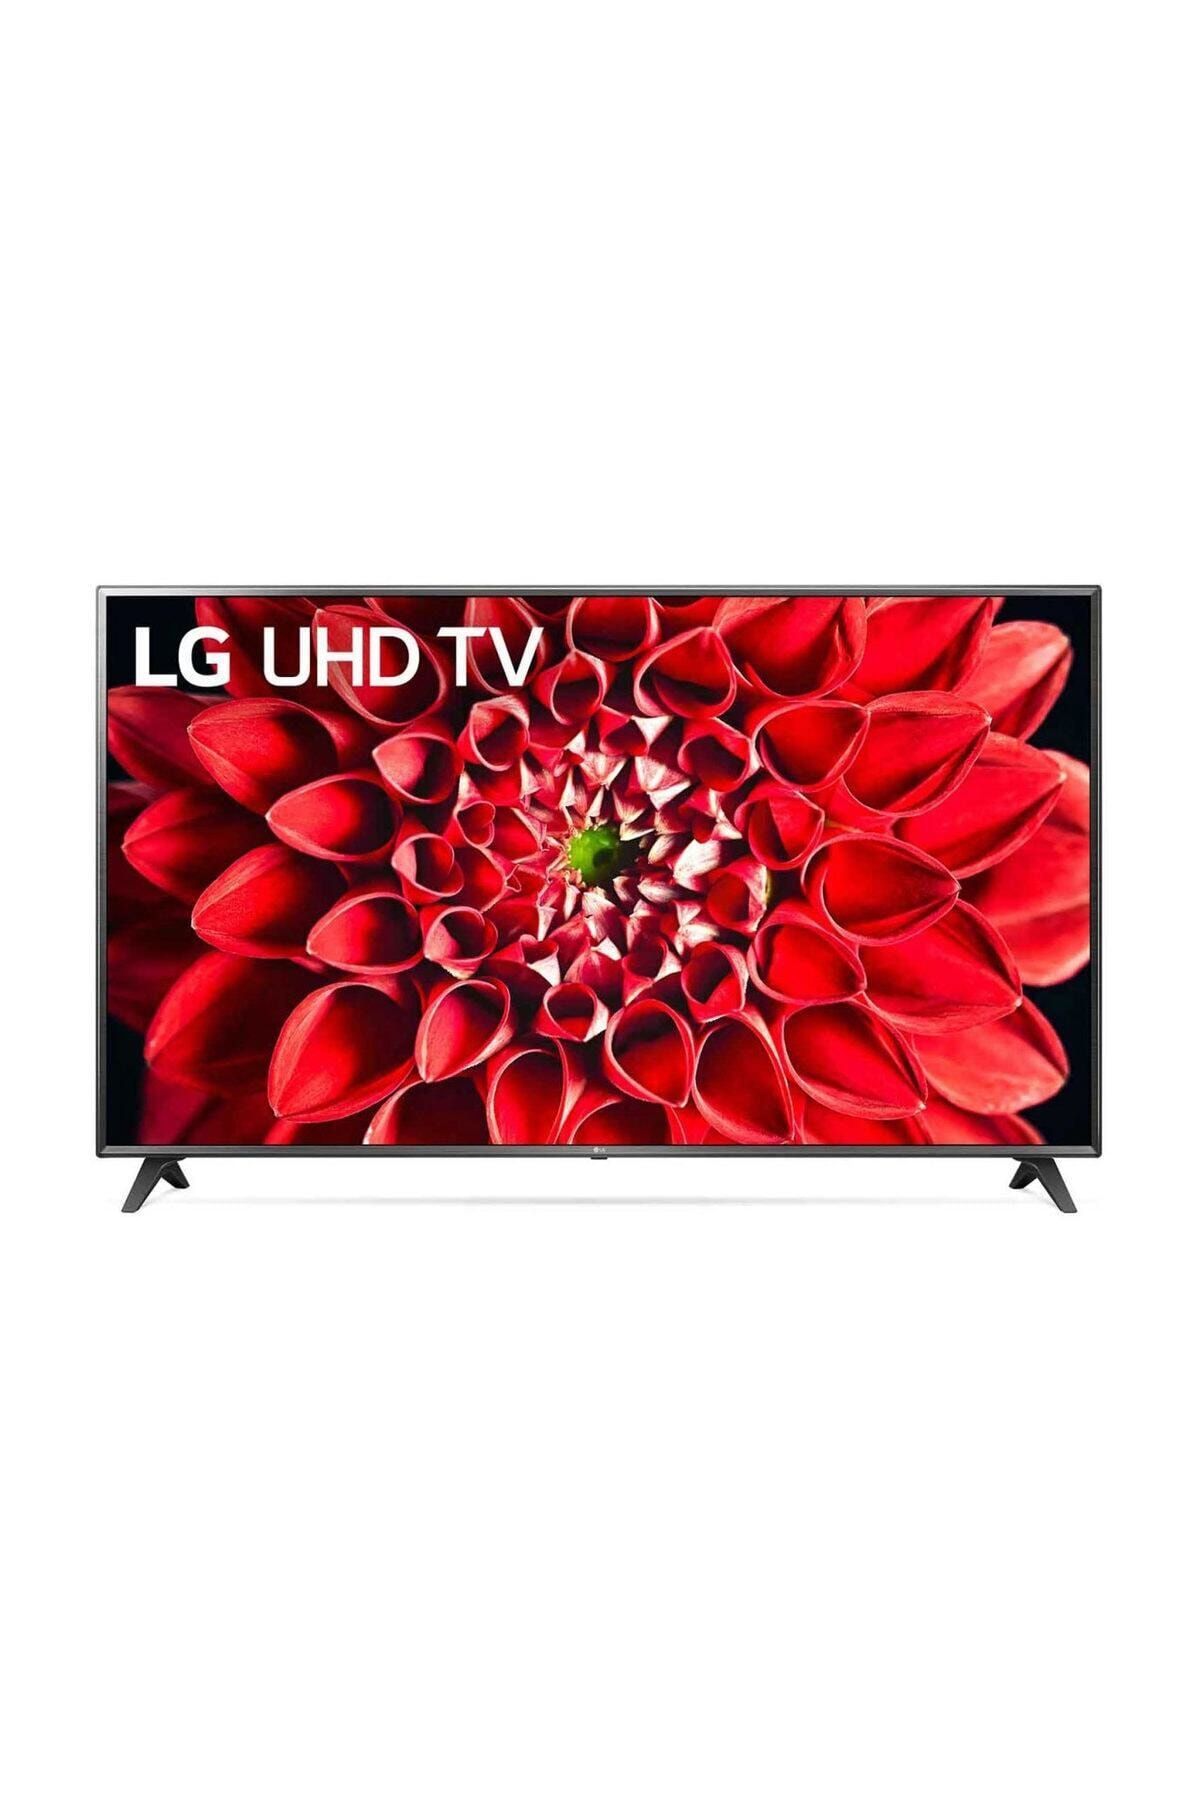 LG 75UN71006 75" 190 Ekran Uydu Alıcılı 4K Ultra HD Smart LED TV